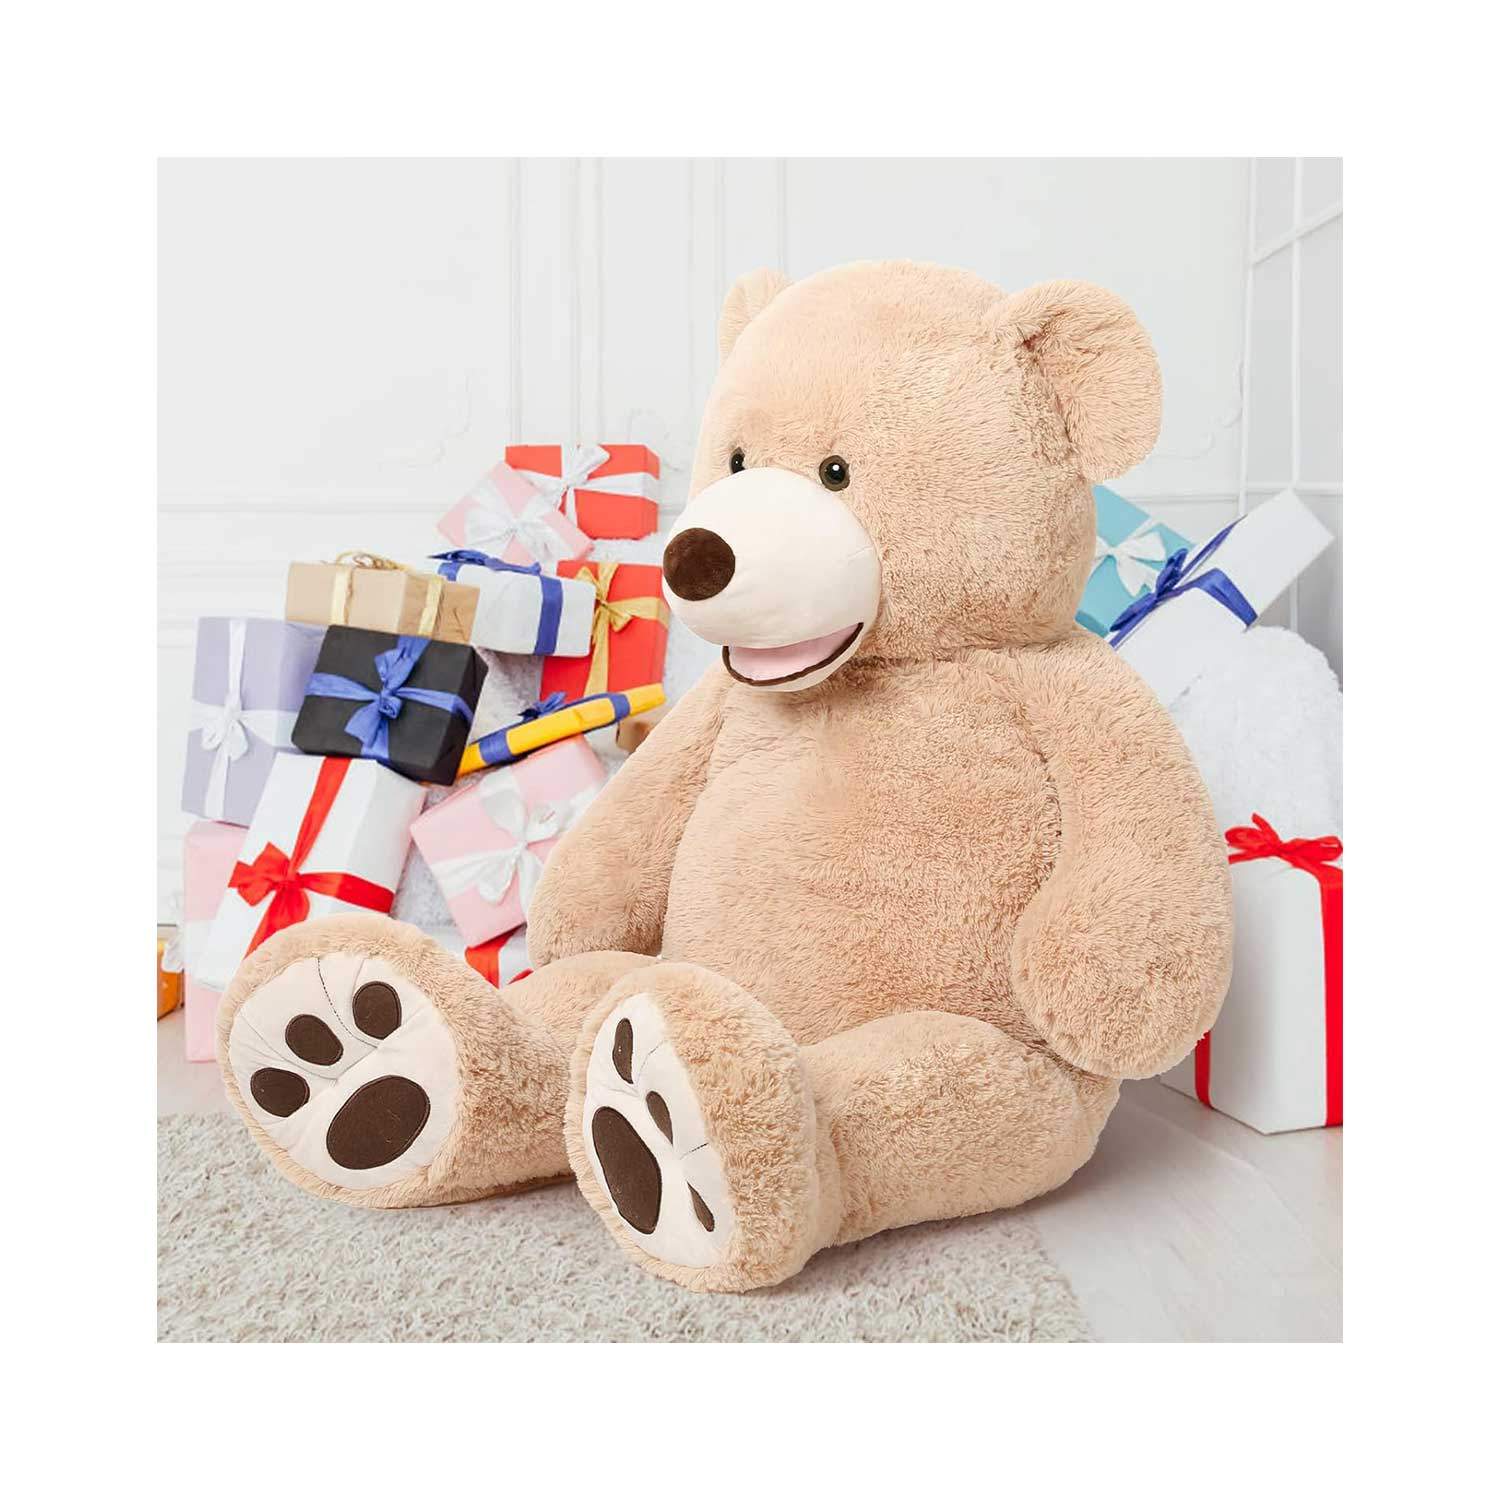 Big Stuffed Teddy Bear, 51in